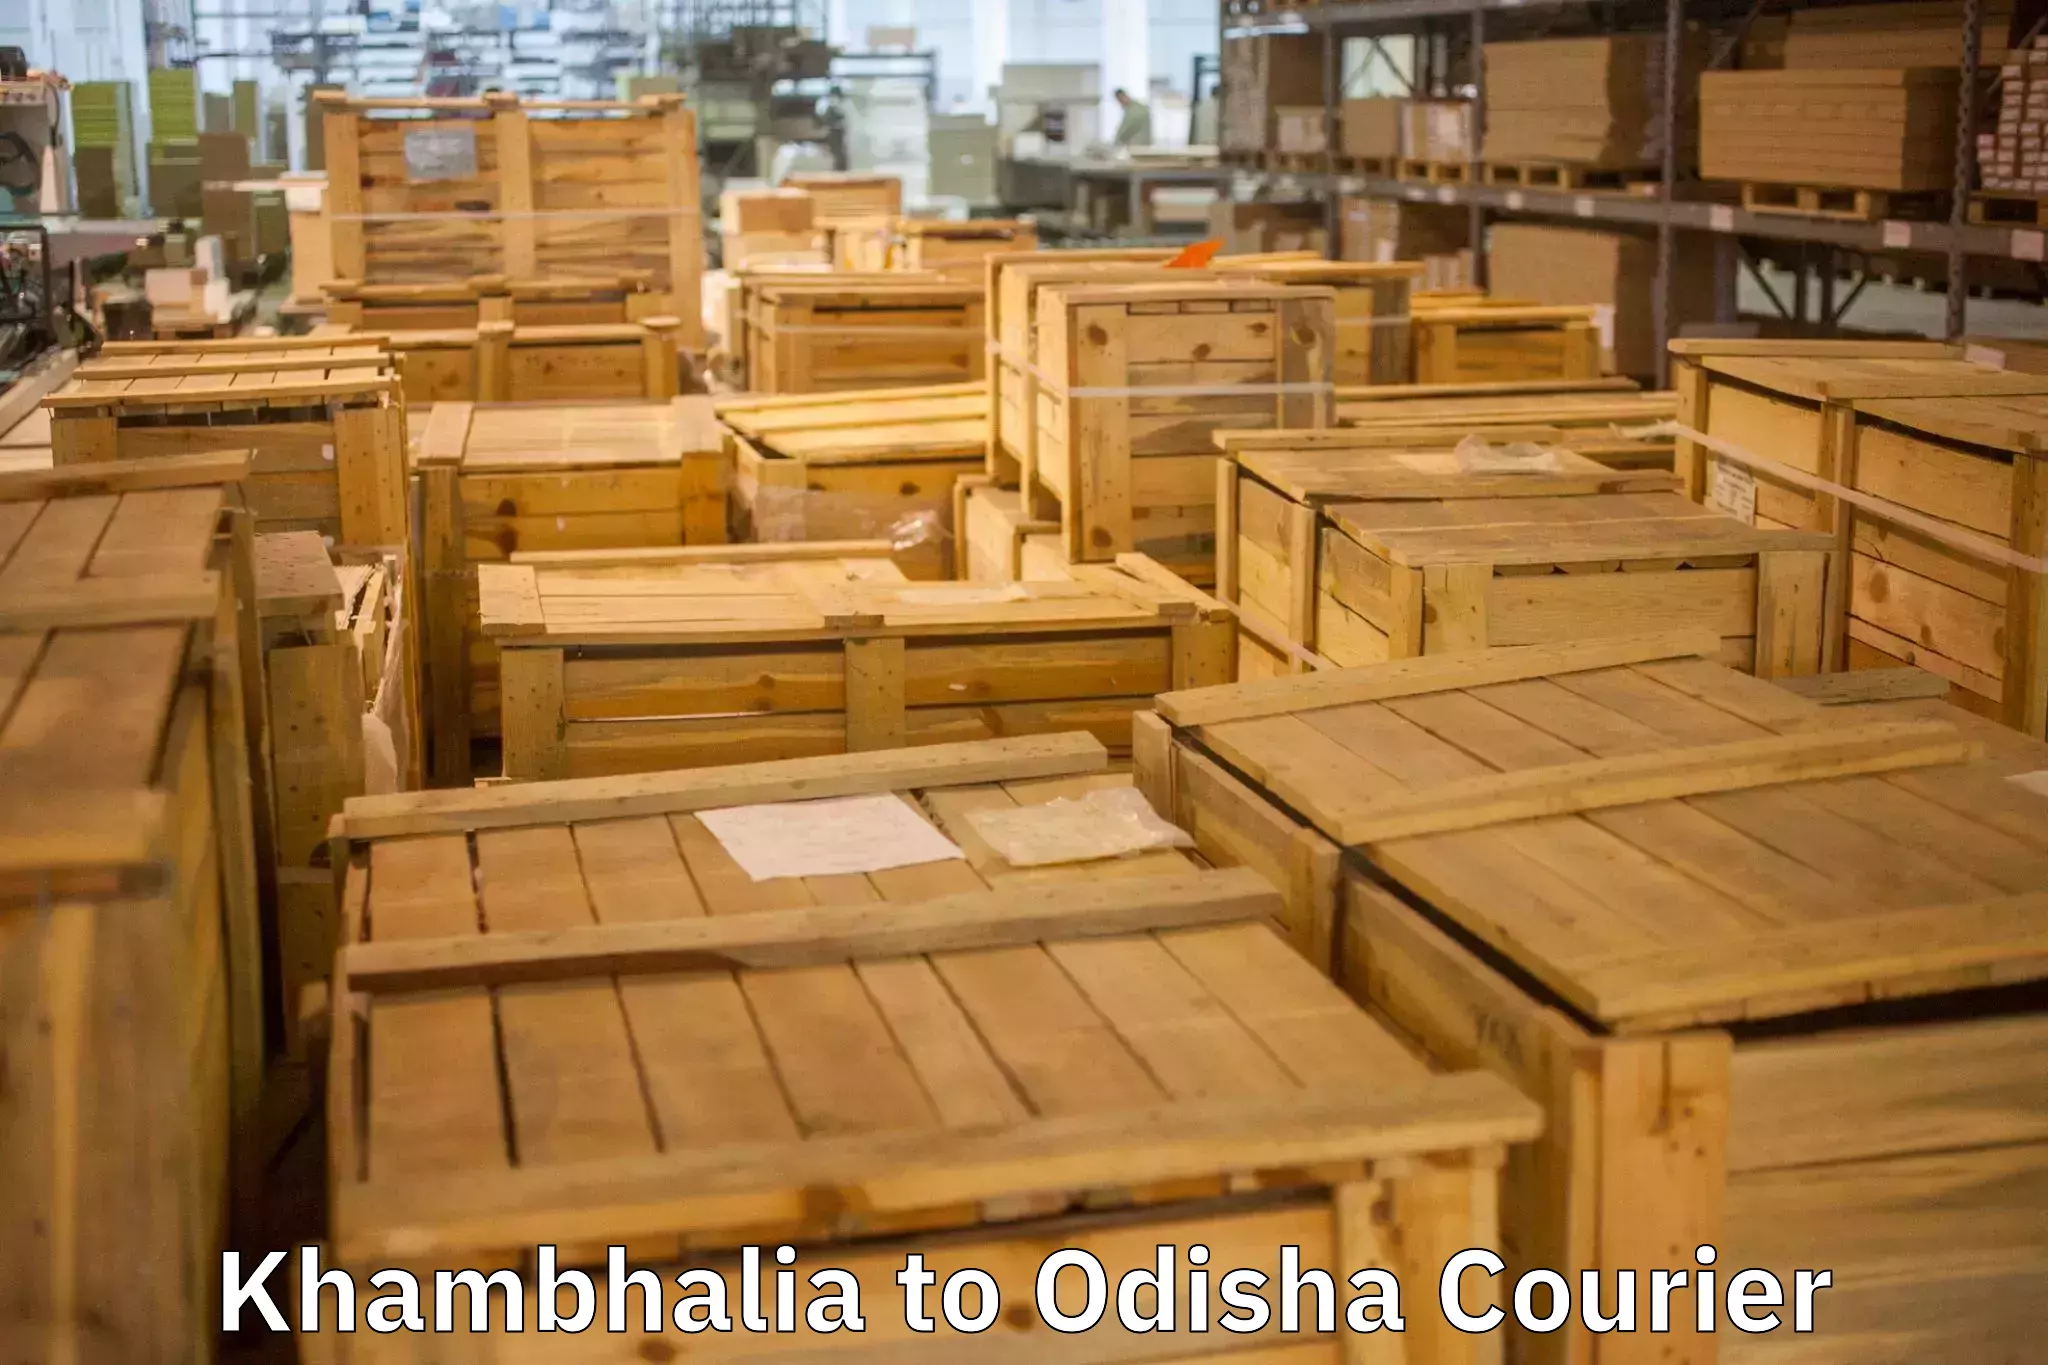 High-quality moving services Khambhalia to Ukhunda